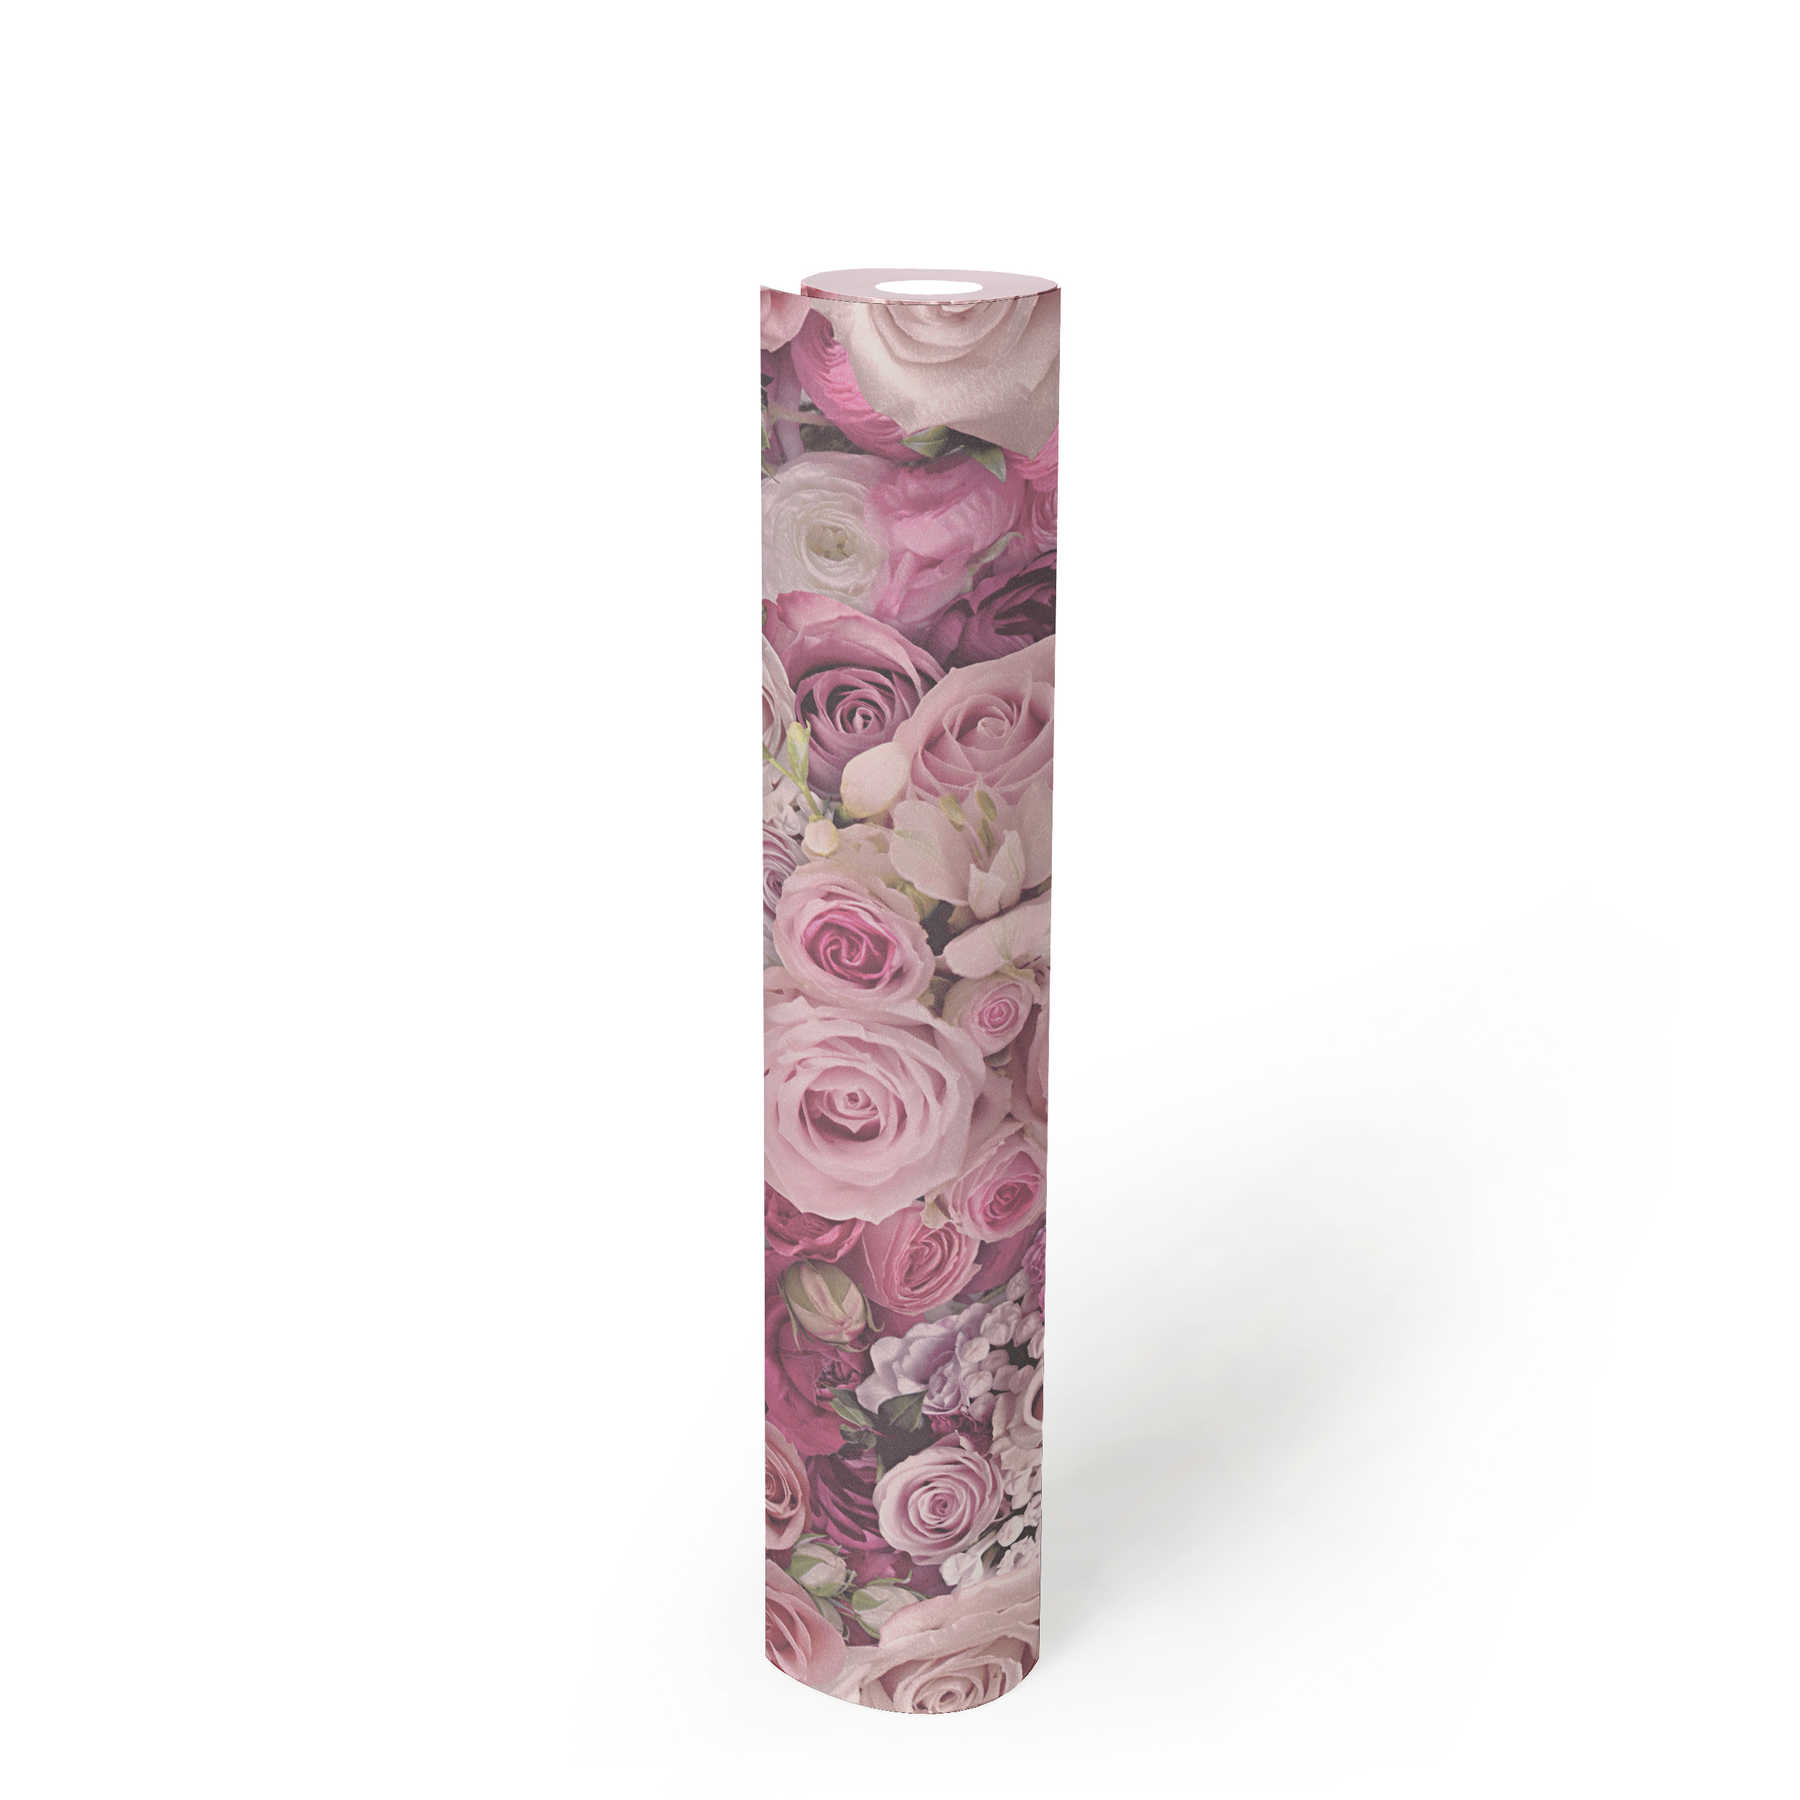             3D Vliestapete Rosen Blüten Motiv – Violett
        